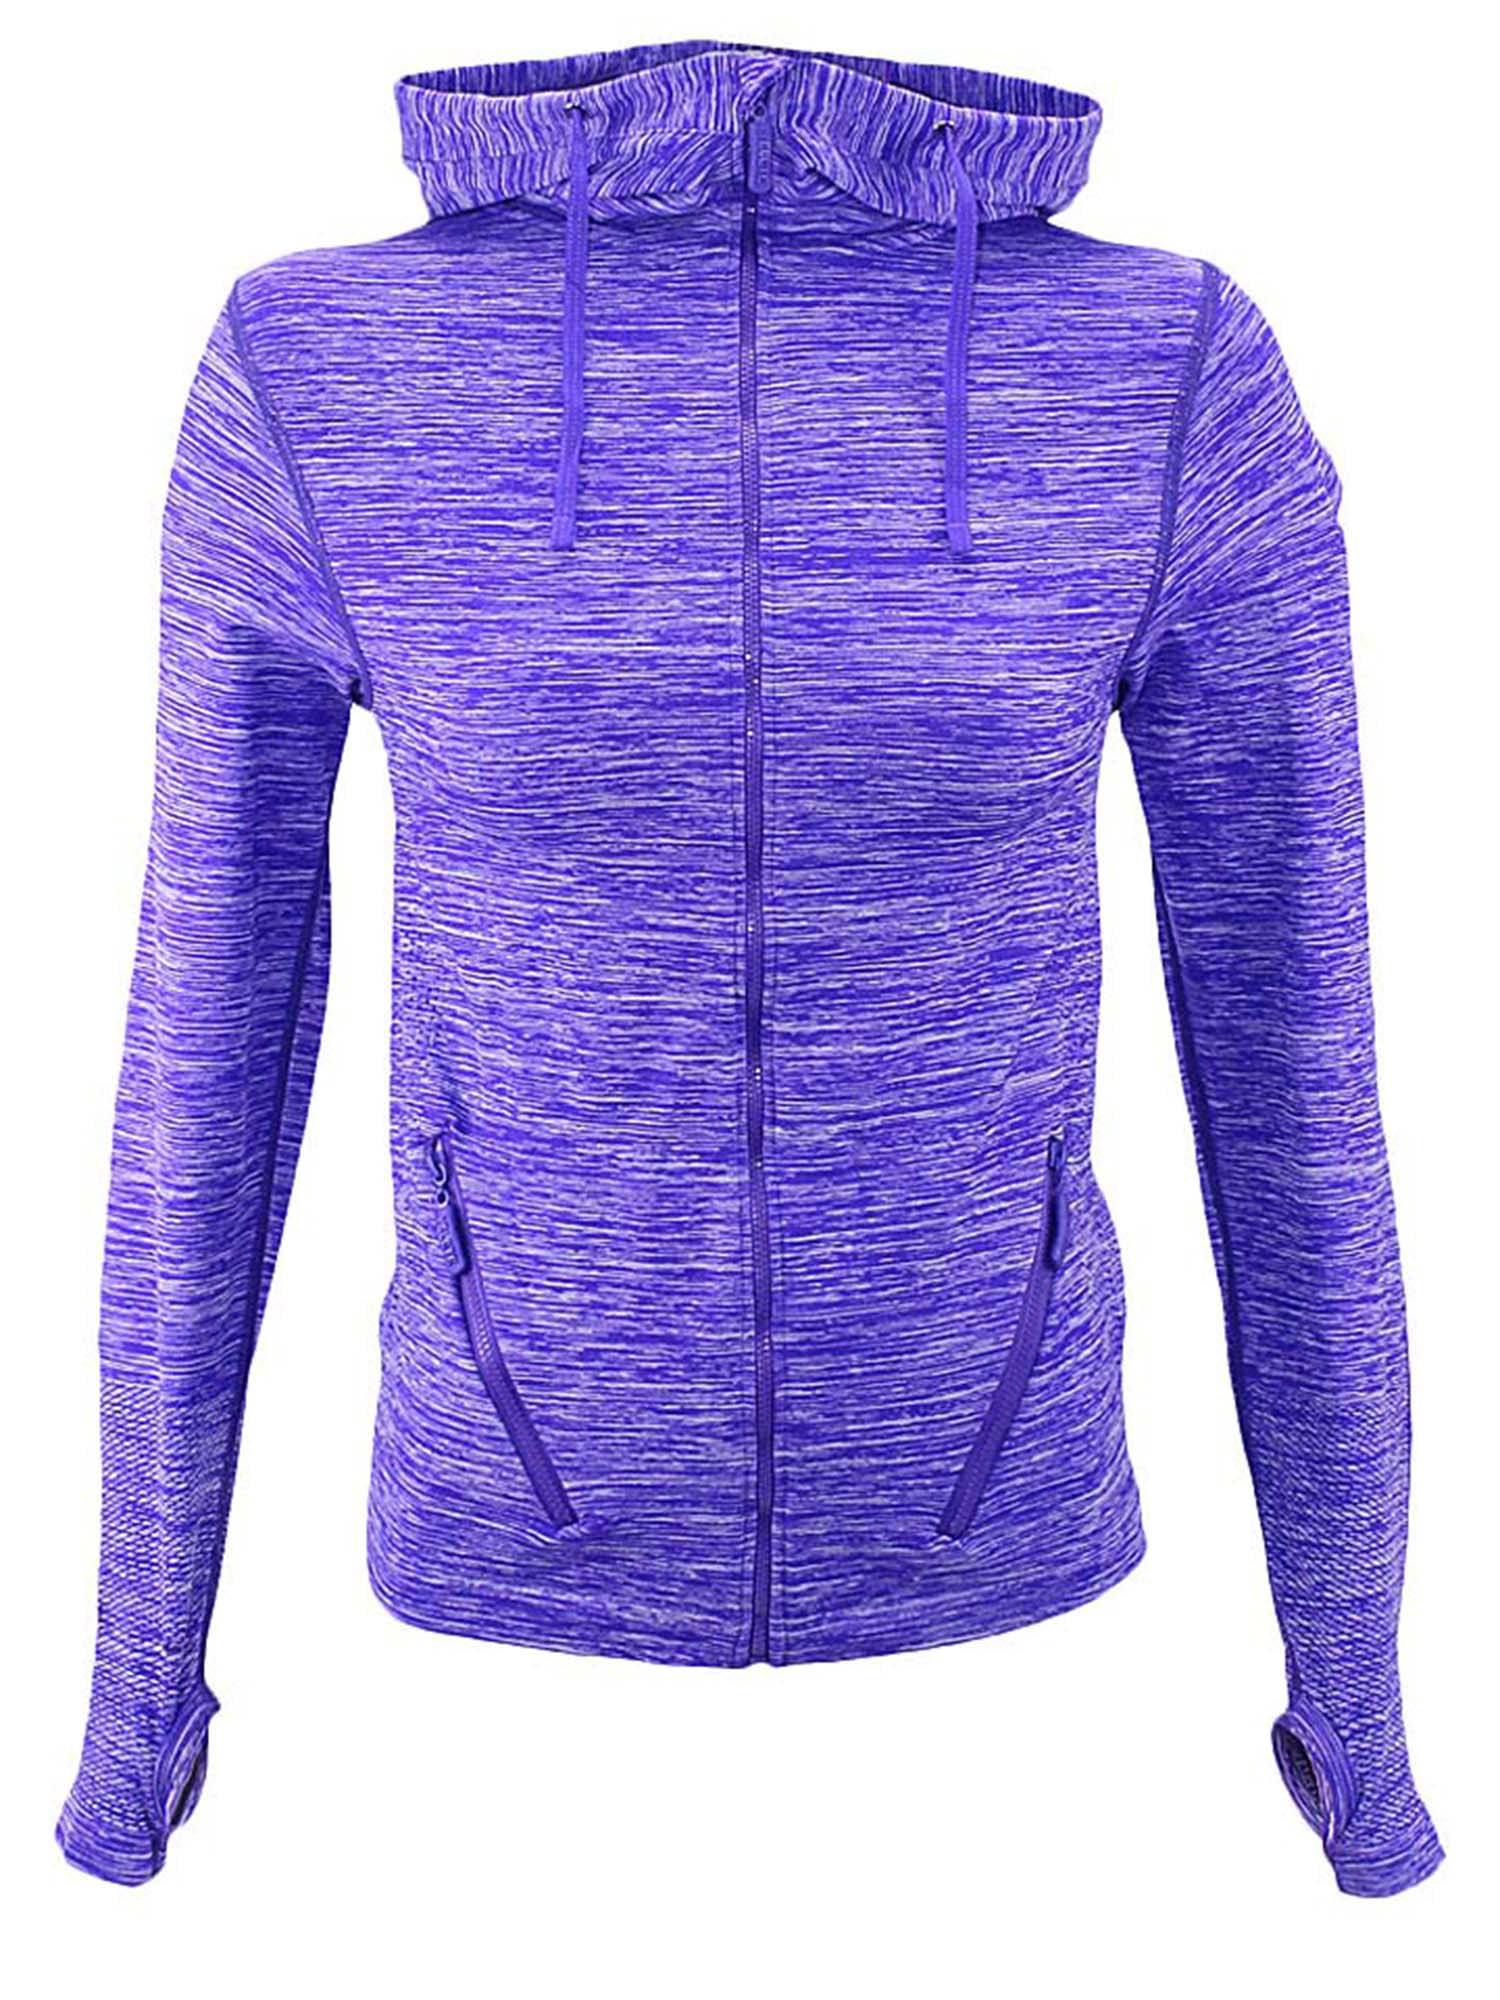 Purple Gray Zip-Up Marled Athletic Jacket Yoga Hoodie Size Medium/Large ...